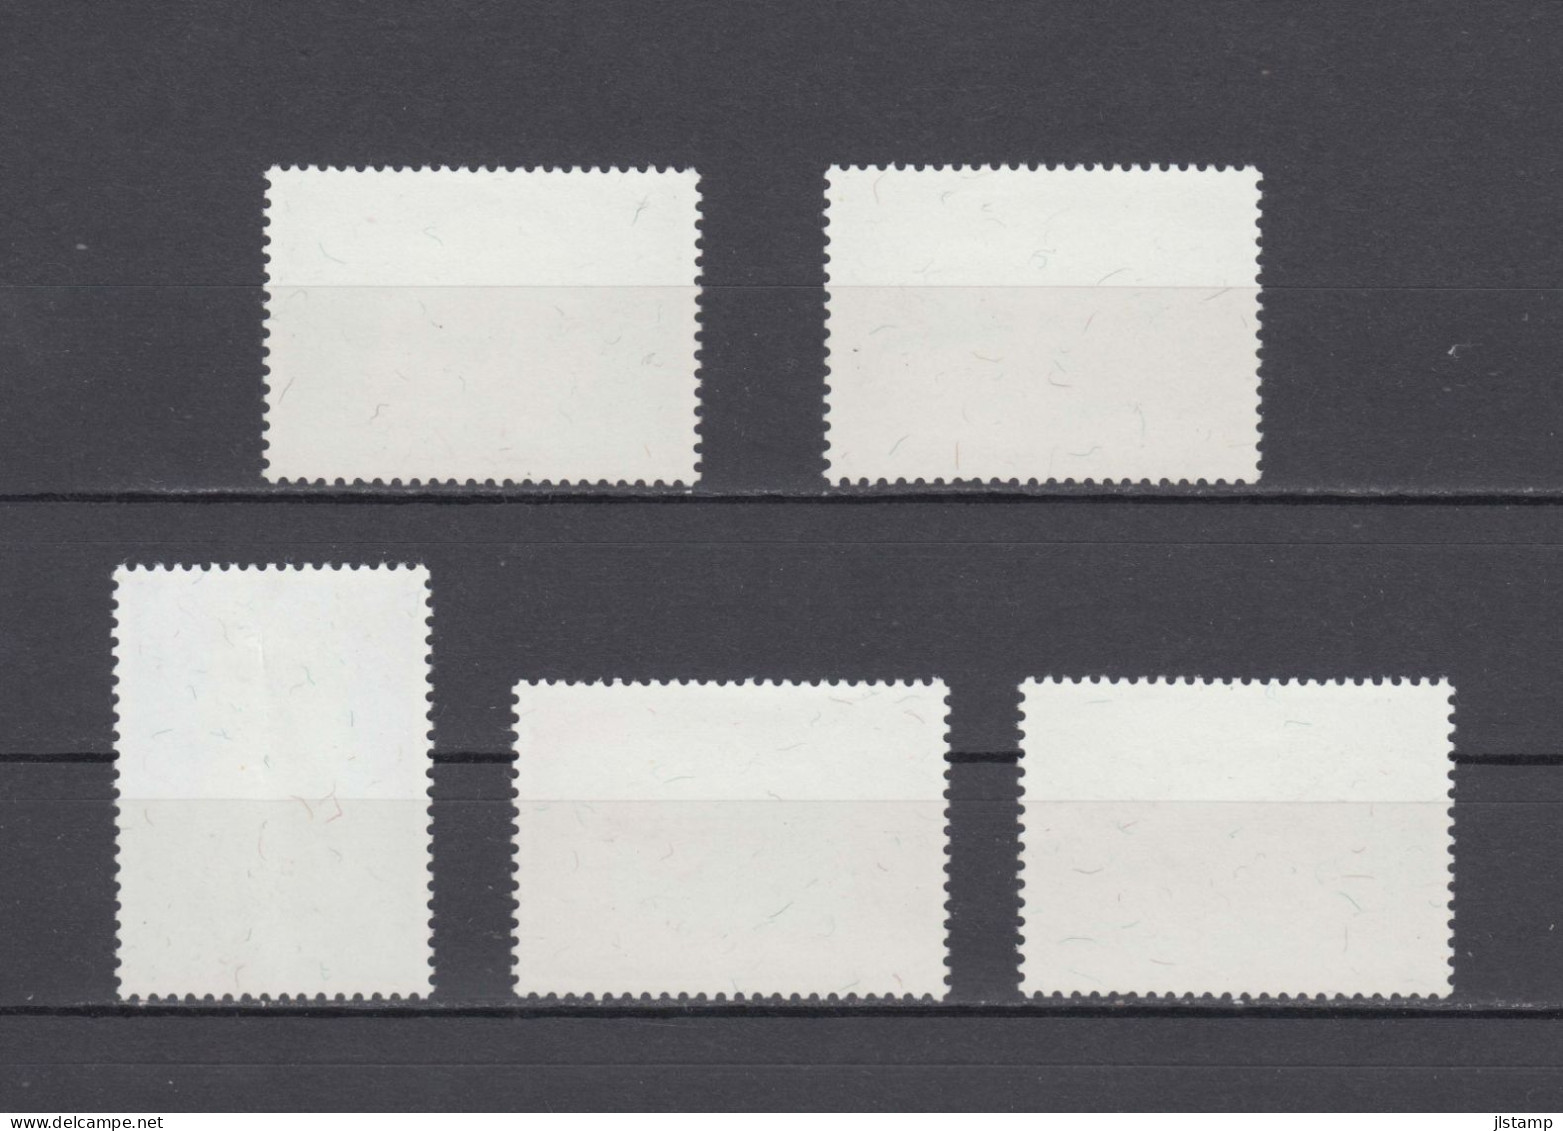 China Taiwan 1974 Porcelain Stamp Set,Scott#1864-1868, MNH,OG,VF, $1 Folded - Ongebruikt